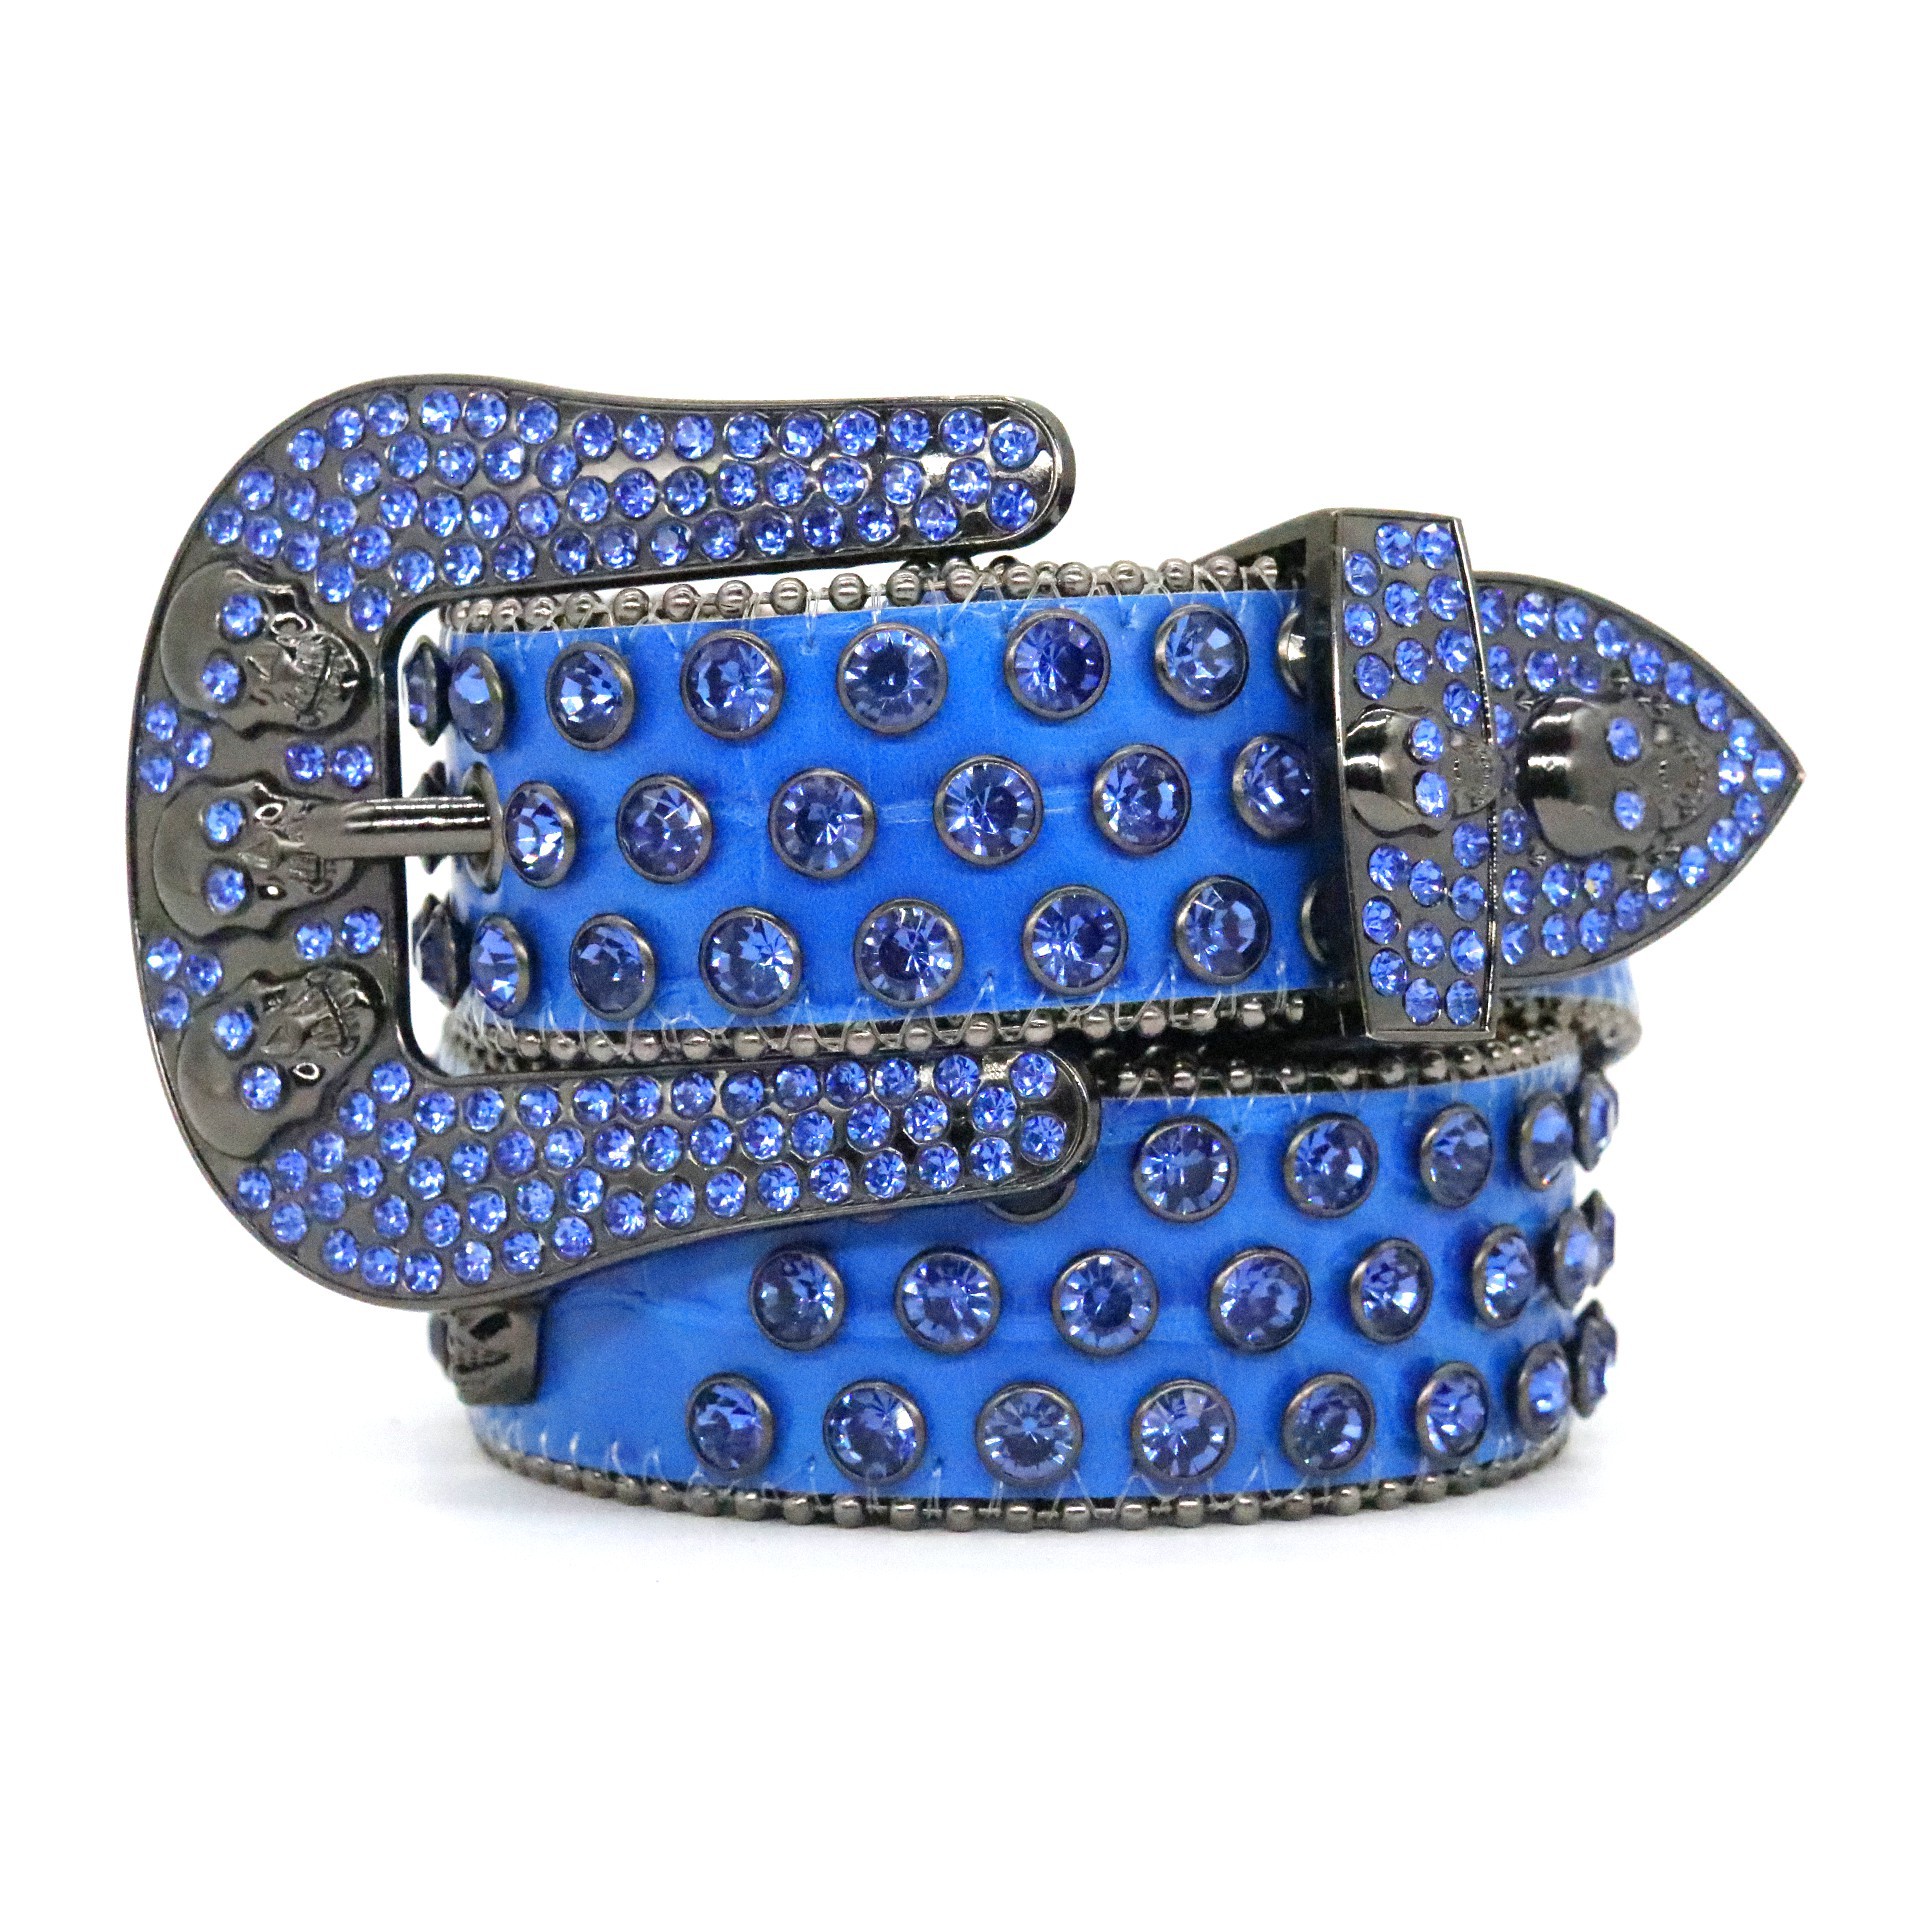 Belts designer bb belt simon fashion for men women shiny diamond black on black blue white multicolour with bling rhinestones as g215B